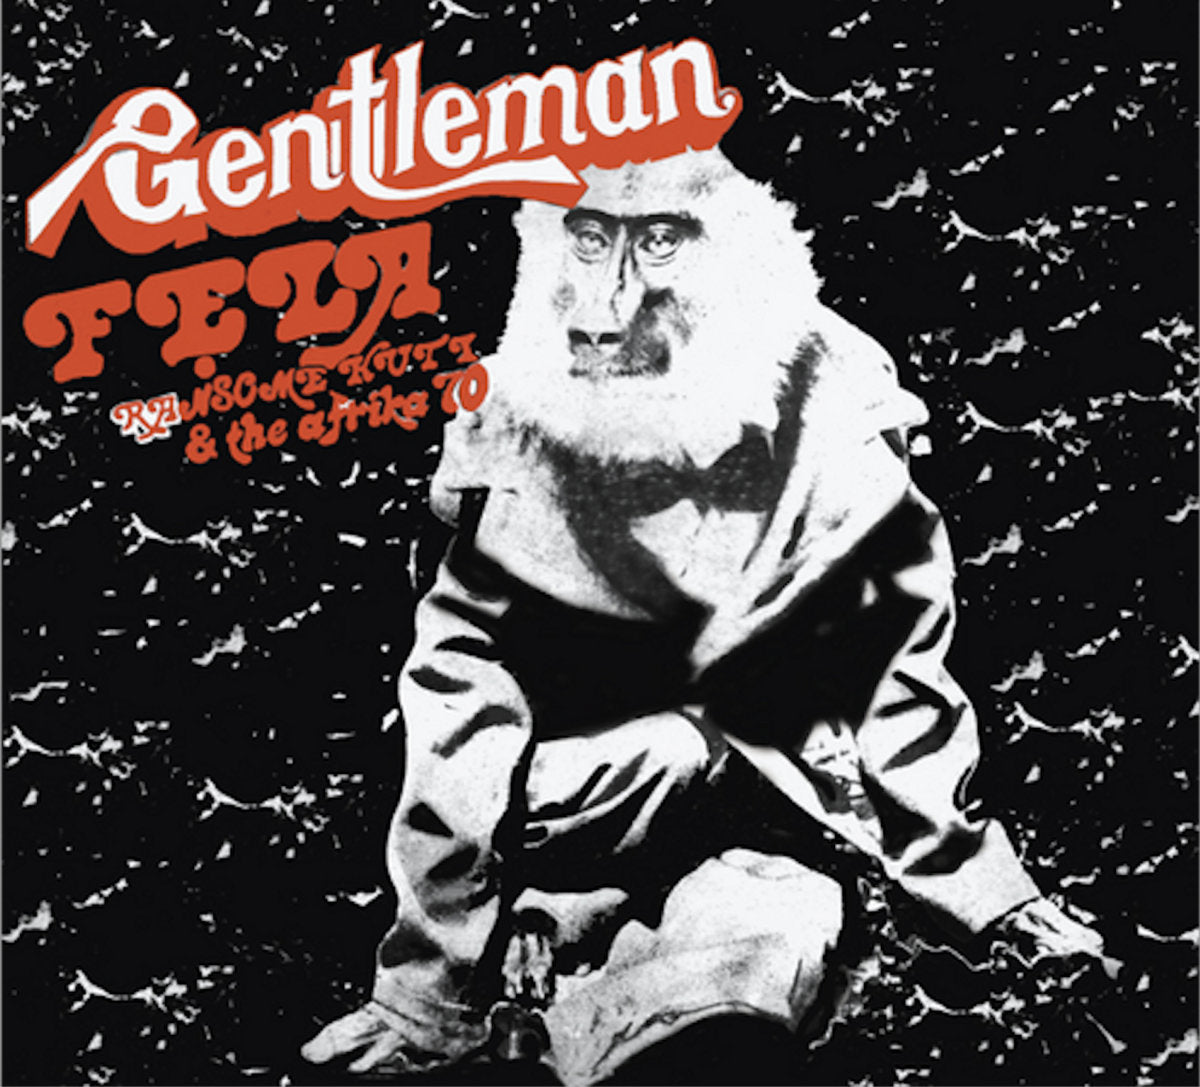 Kuti, Fela "Gentleman" [50th Anniversary "Igbo Smoke" Vinyl]